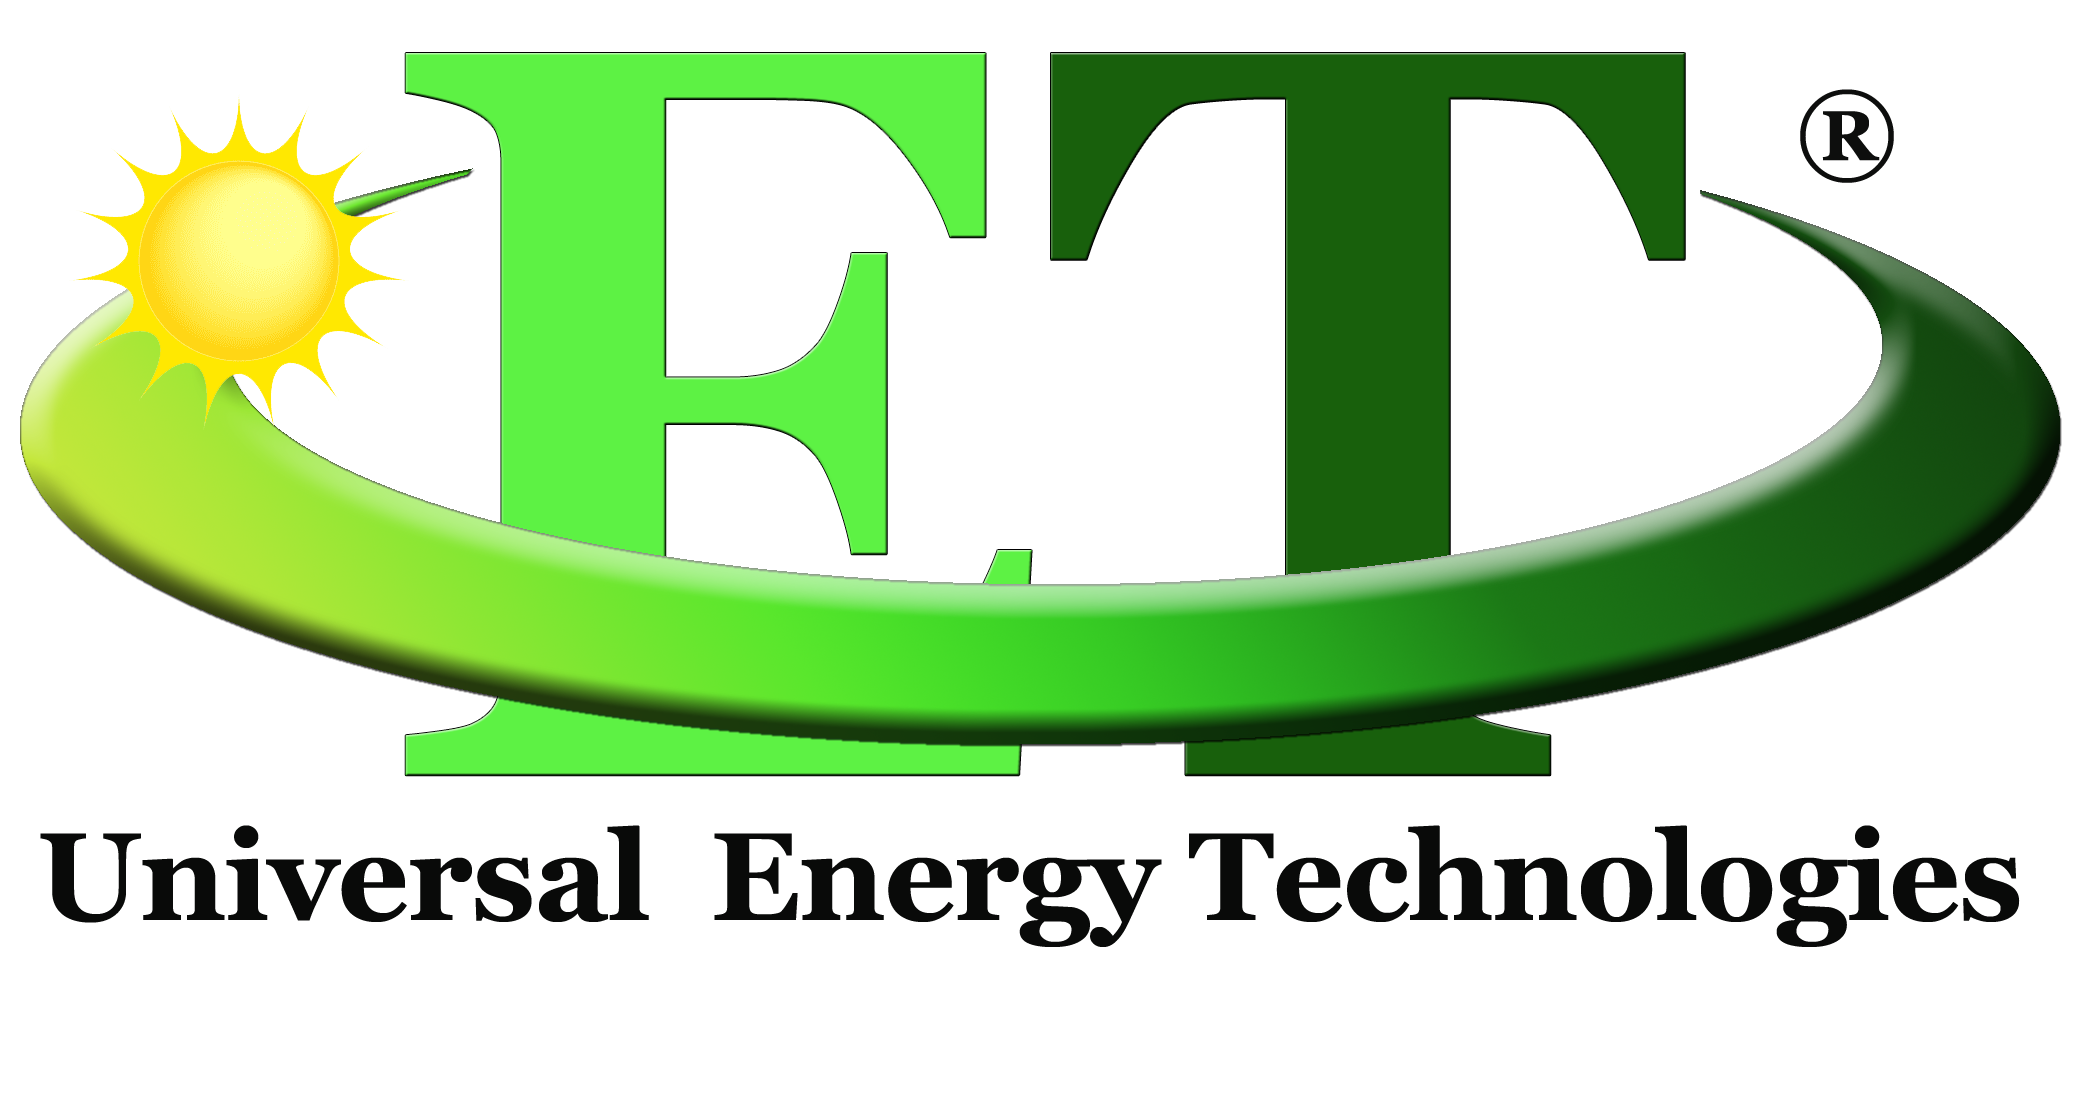 Universal Energy Technologies